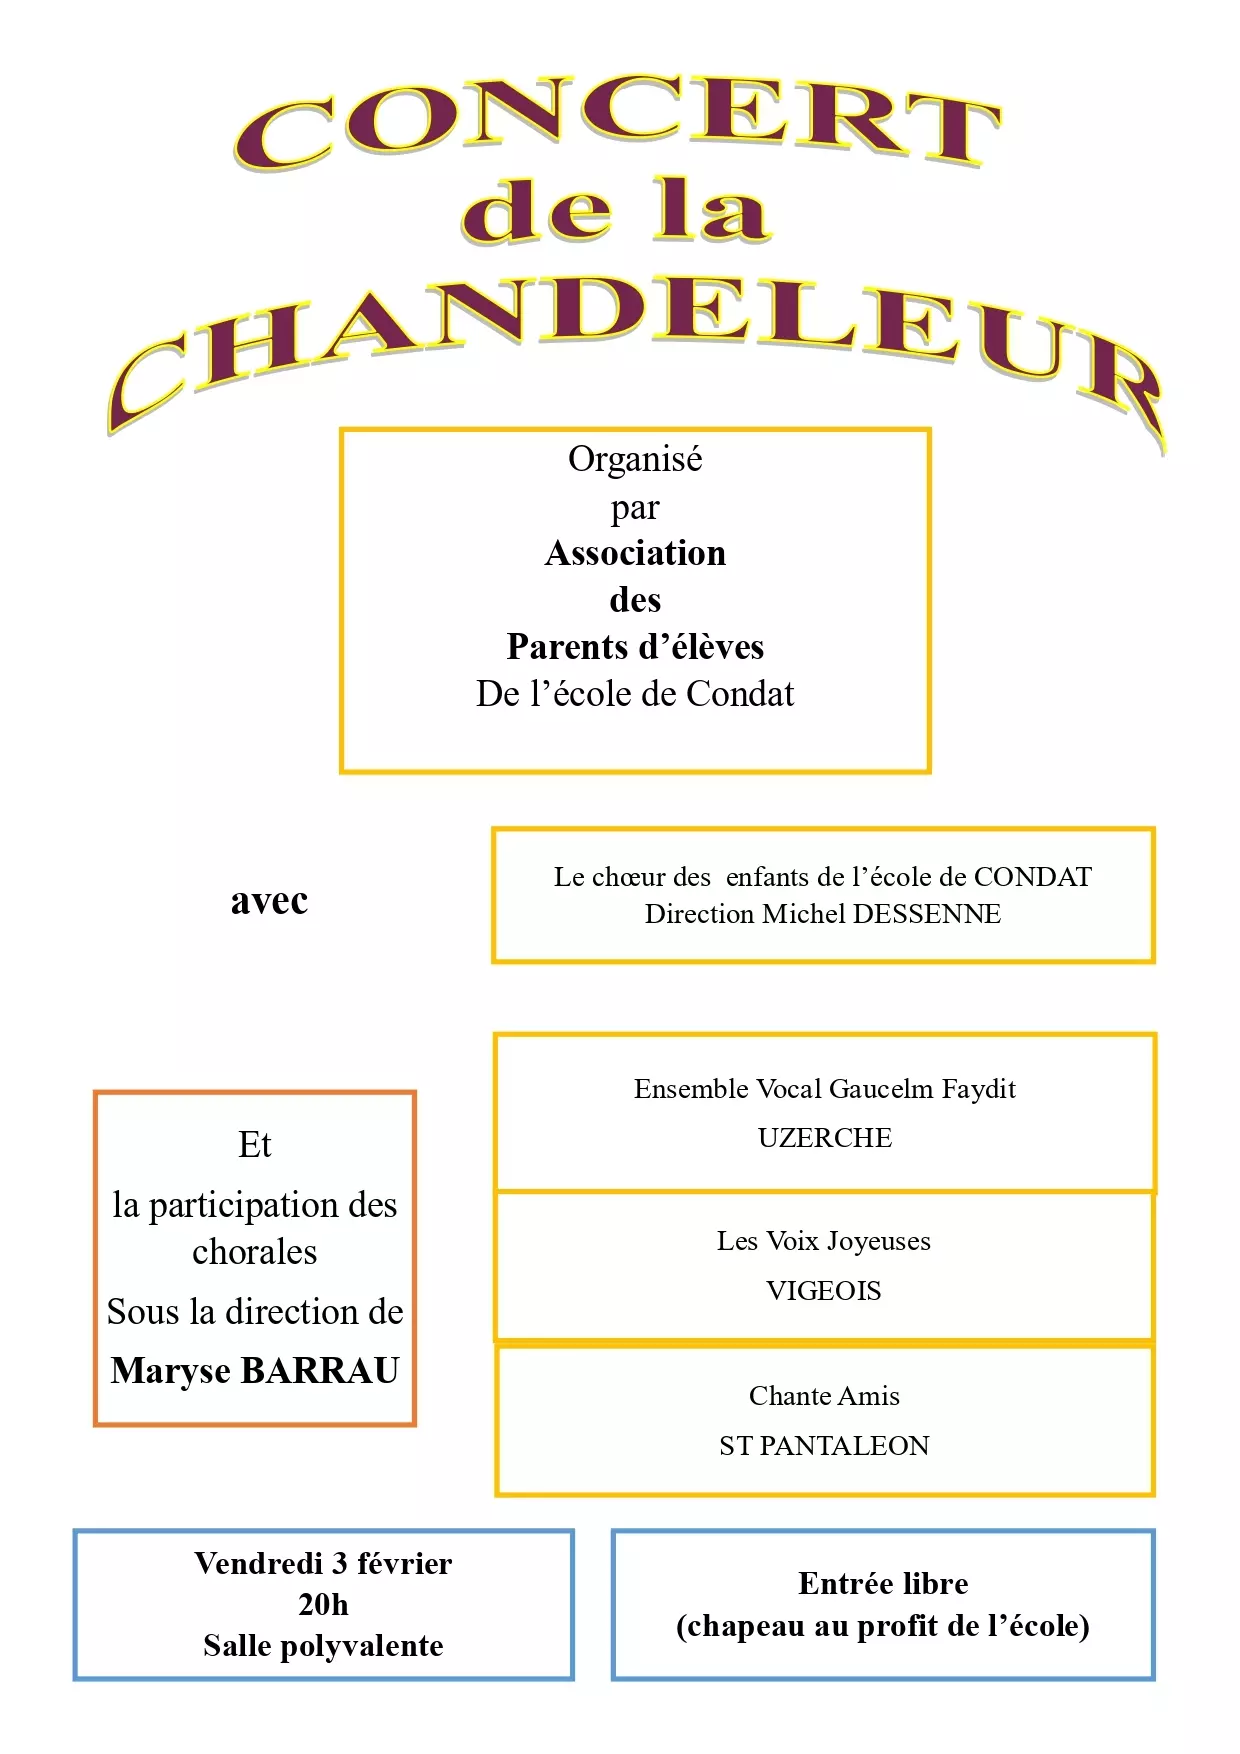 Concerts-Concert de la Chandeleur